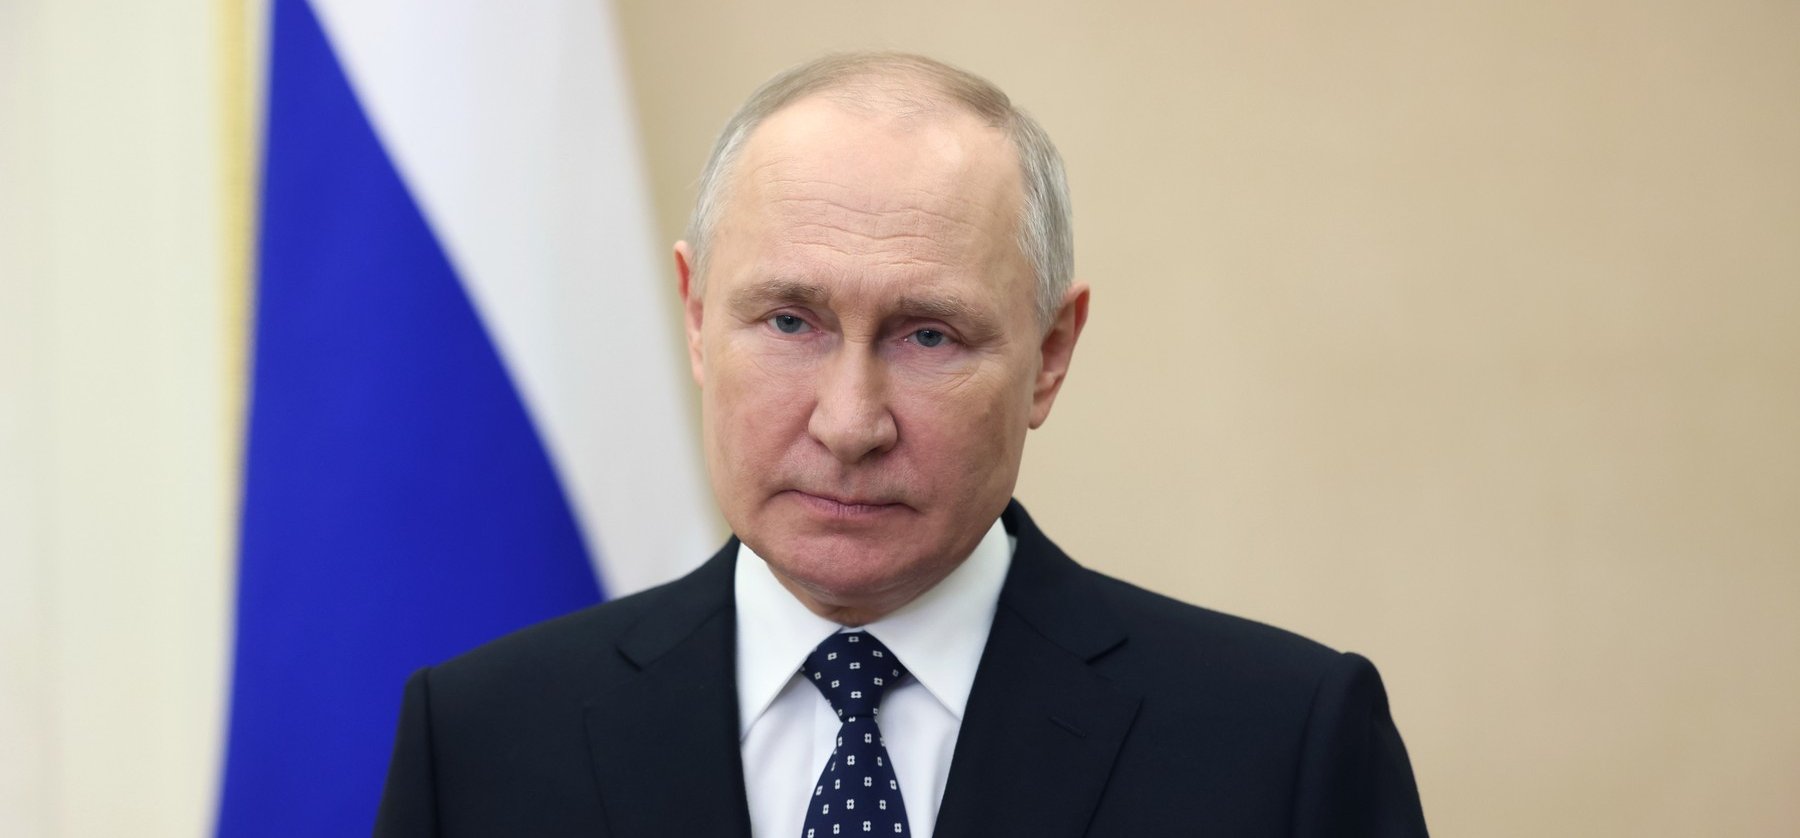 Putyin lebukott: végig hazudott az orosz elnök?